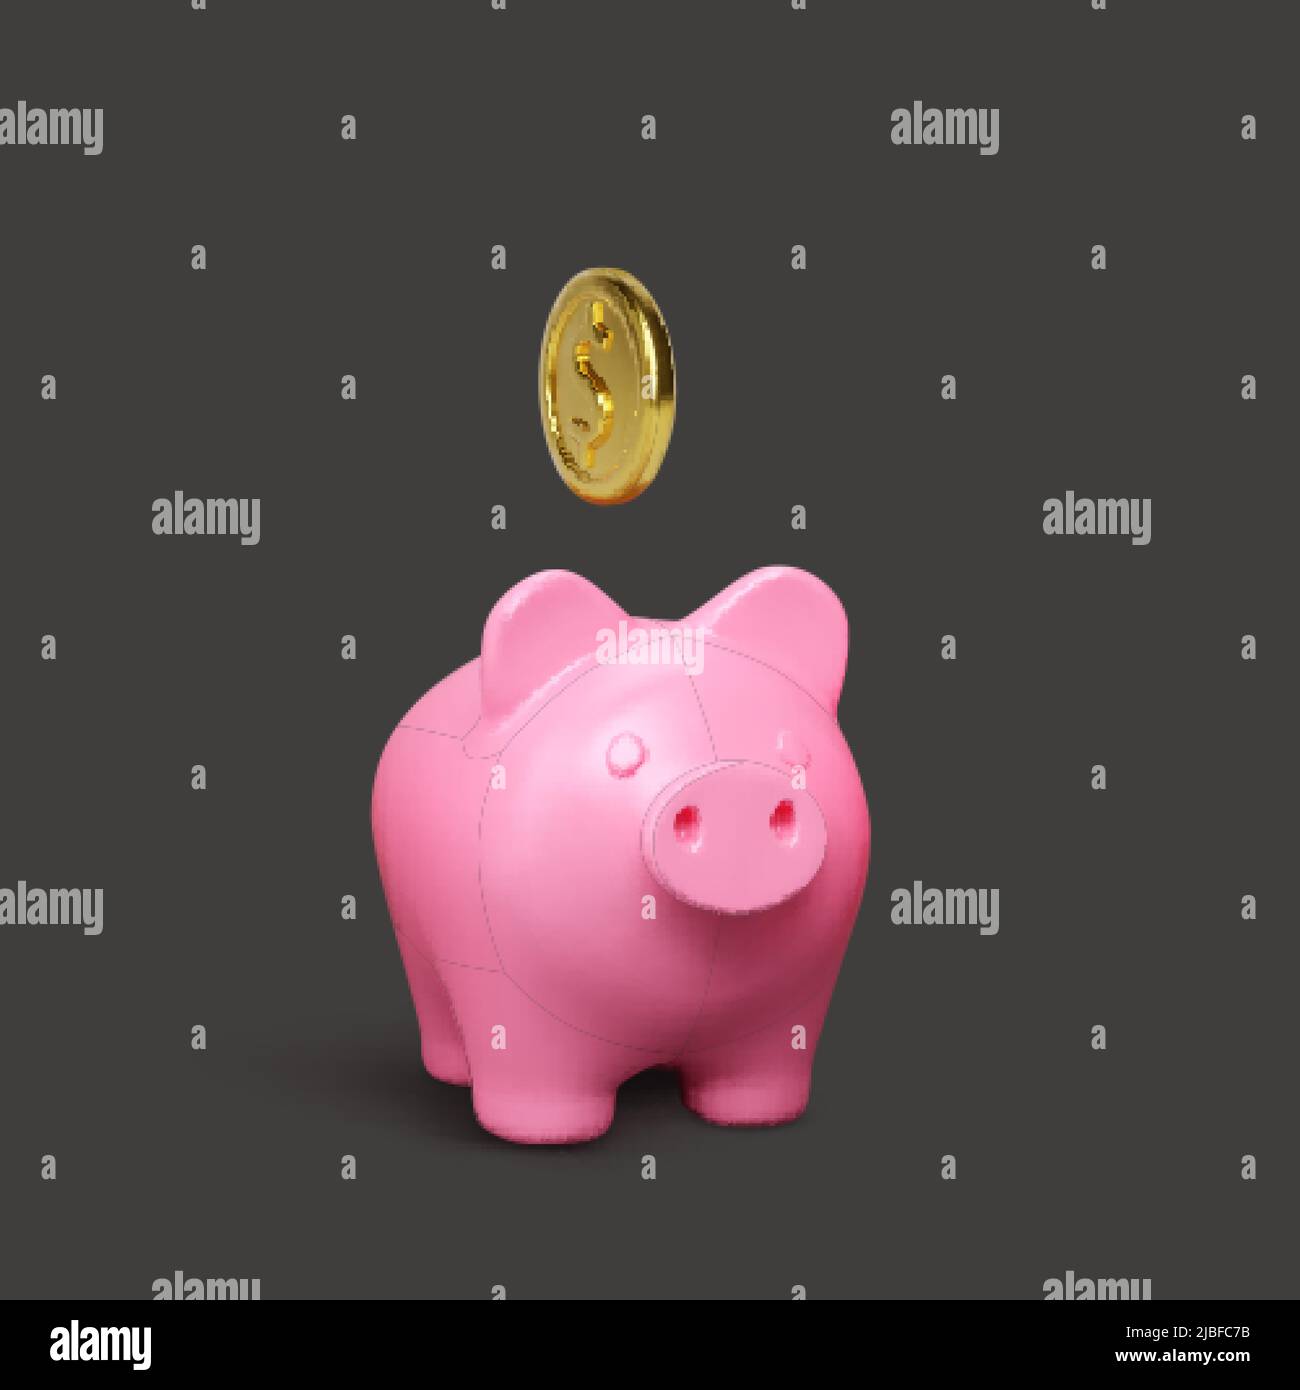 Banco de cerdo rosa sobre fondo oscuro. Concepto de negocio creativo del dinero. Diseño realista 3D monedas de oro. Inversión financiera segura o servicios financieros Ilustración del Vector